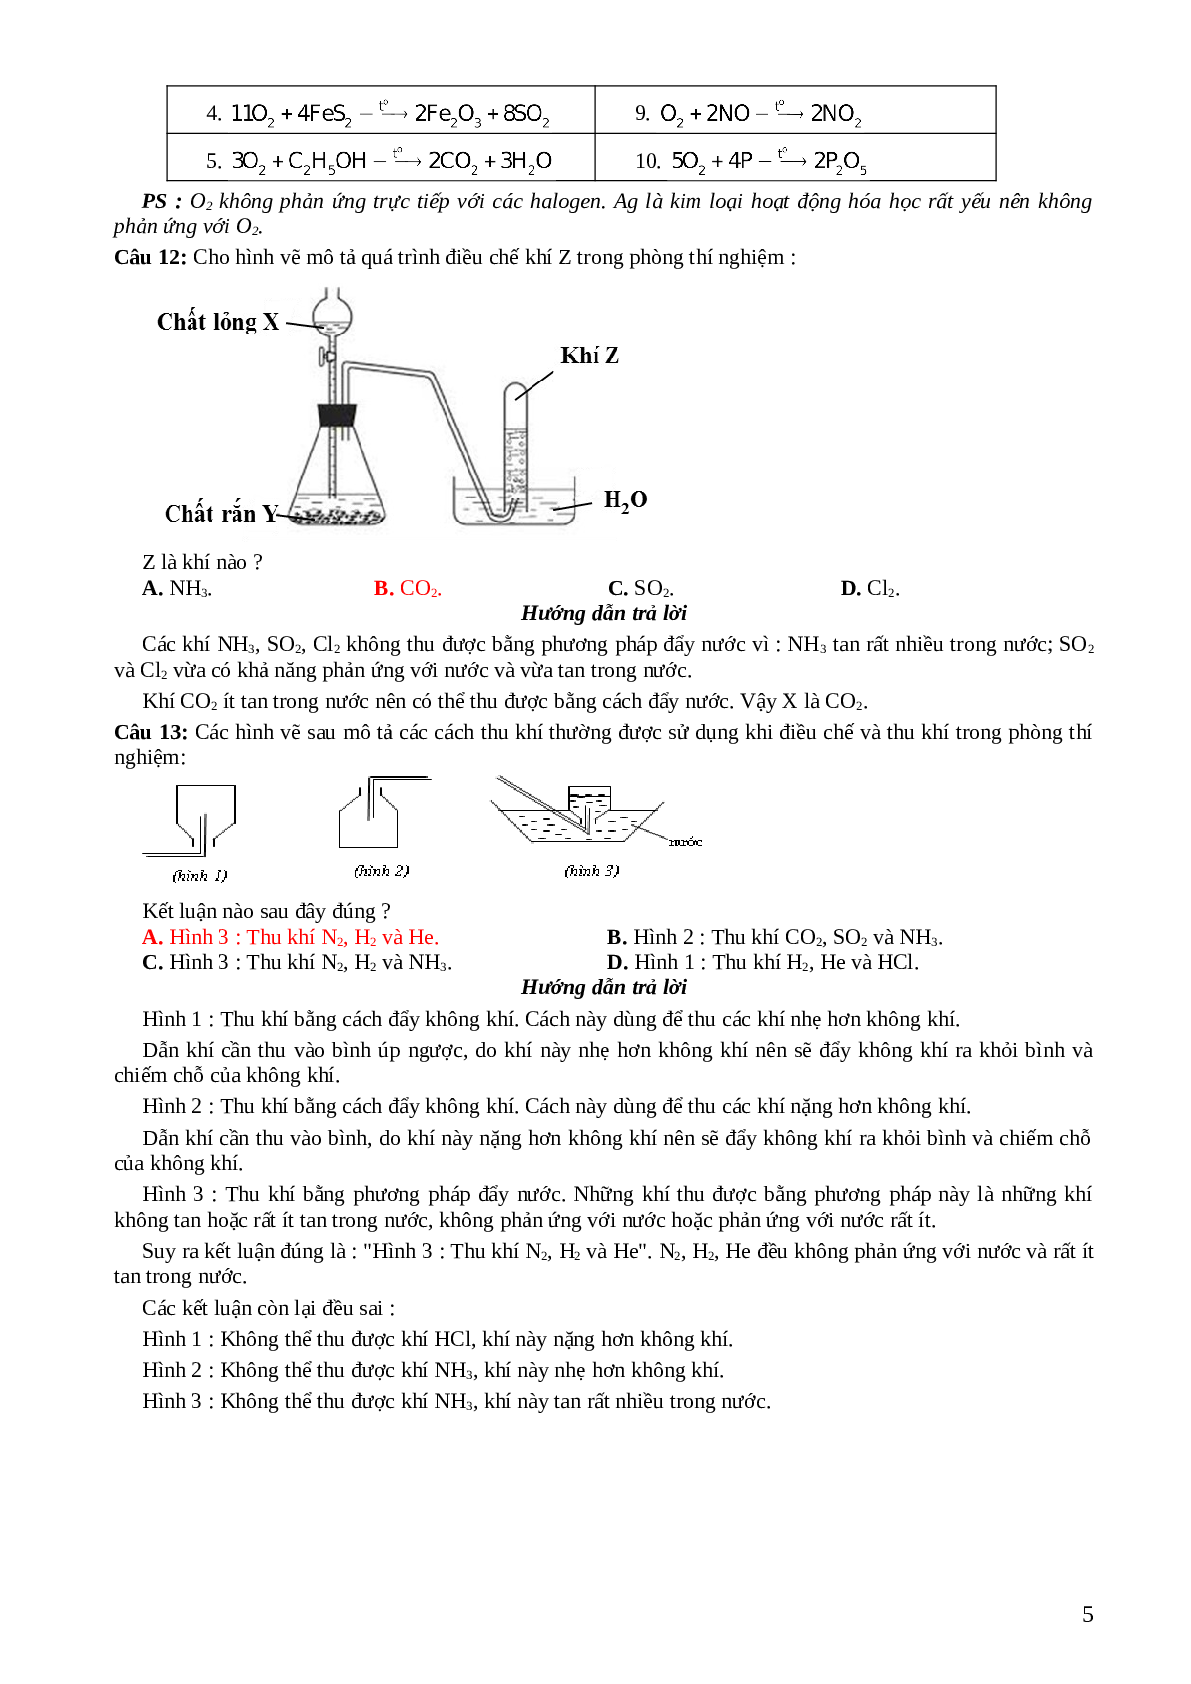 33 câu trắc nghiệm về hình  vẽ thí nghiệm hóa học lớp 12 có đáp án 2023 (trang 5)